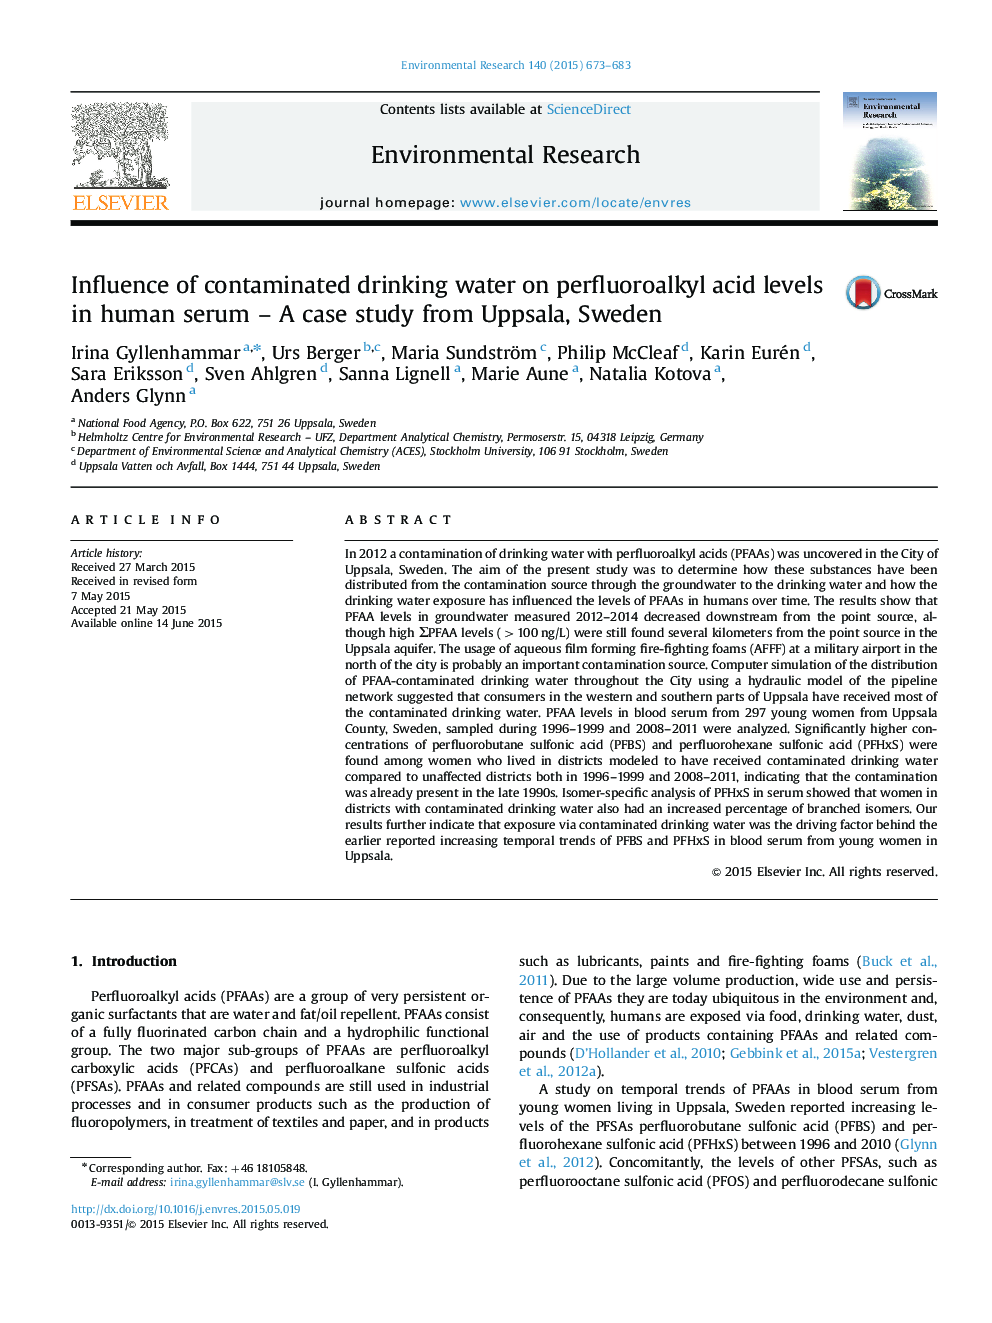 تأثیر آب آشامیدنی در سطح اسید پرفورورالکلی اسید در سرم انسان - مطالعه موردی از اوپسالا، سوئد 